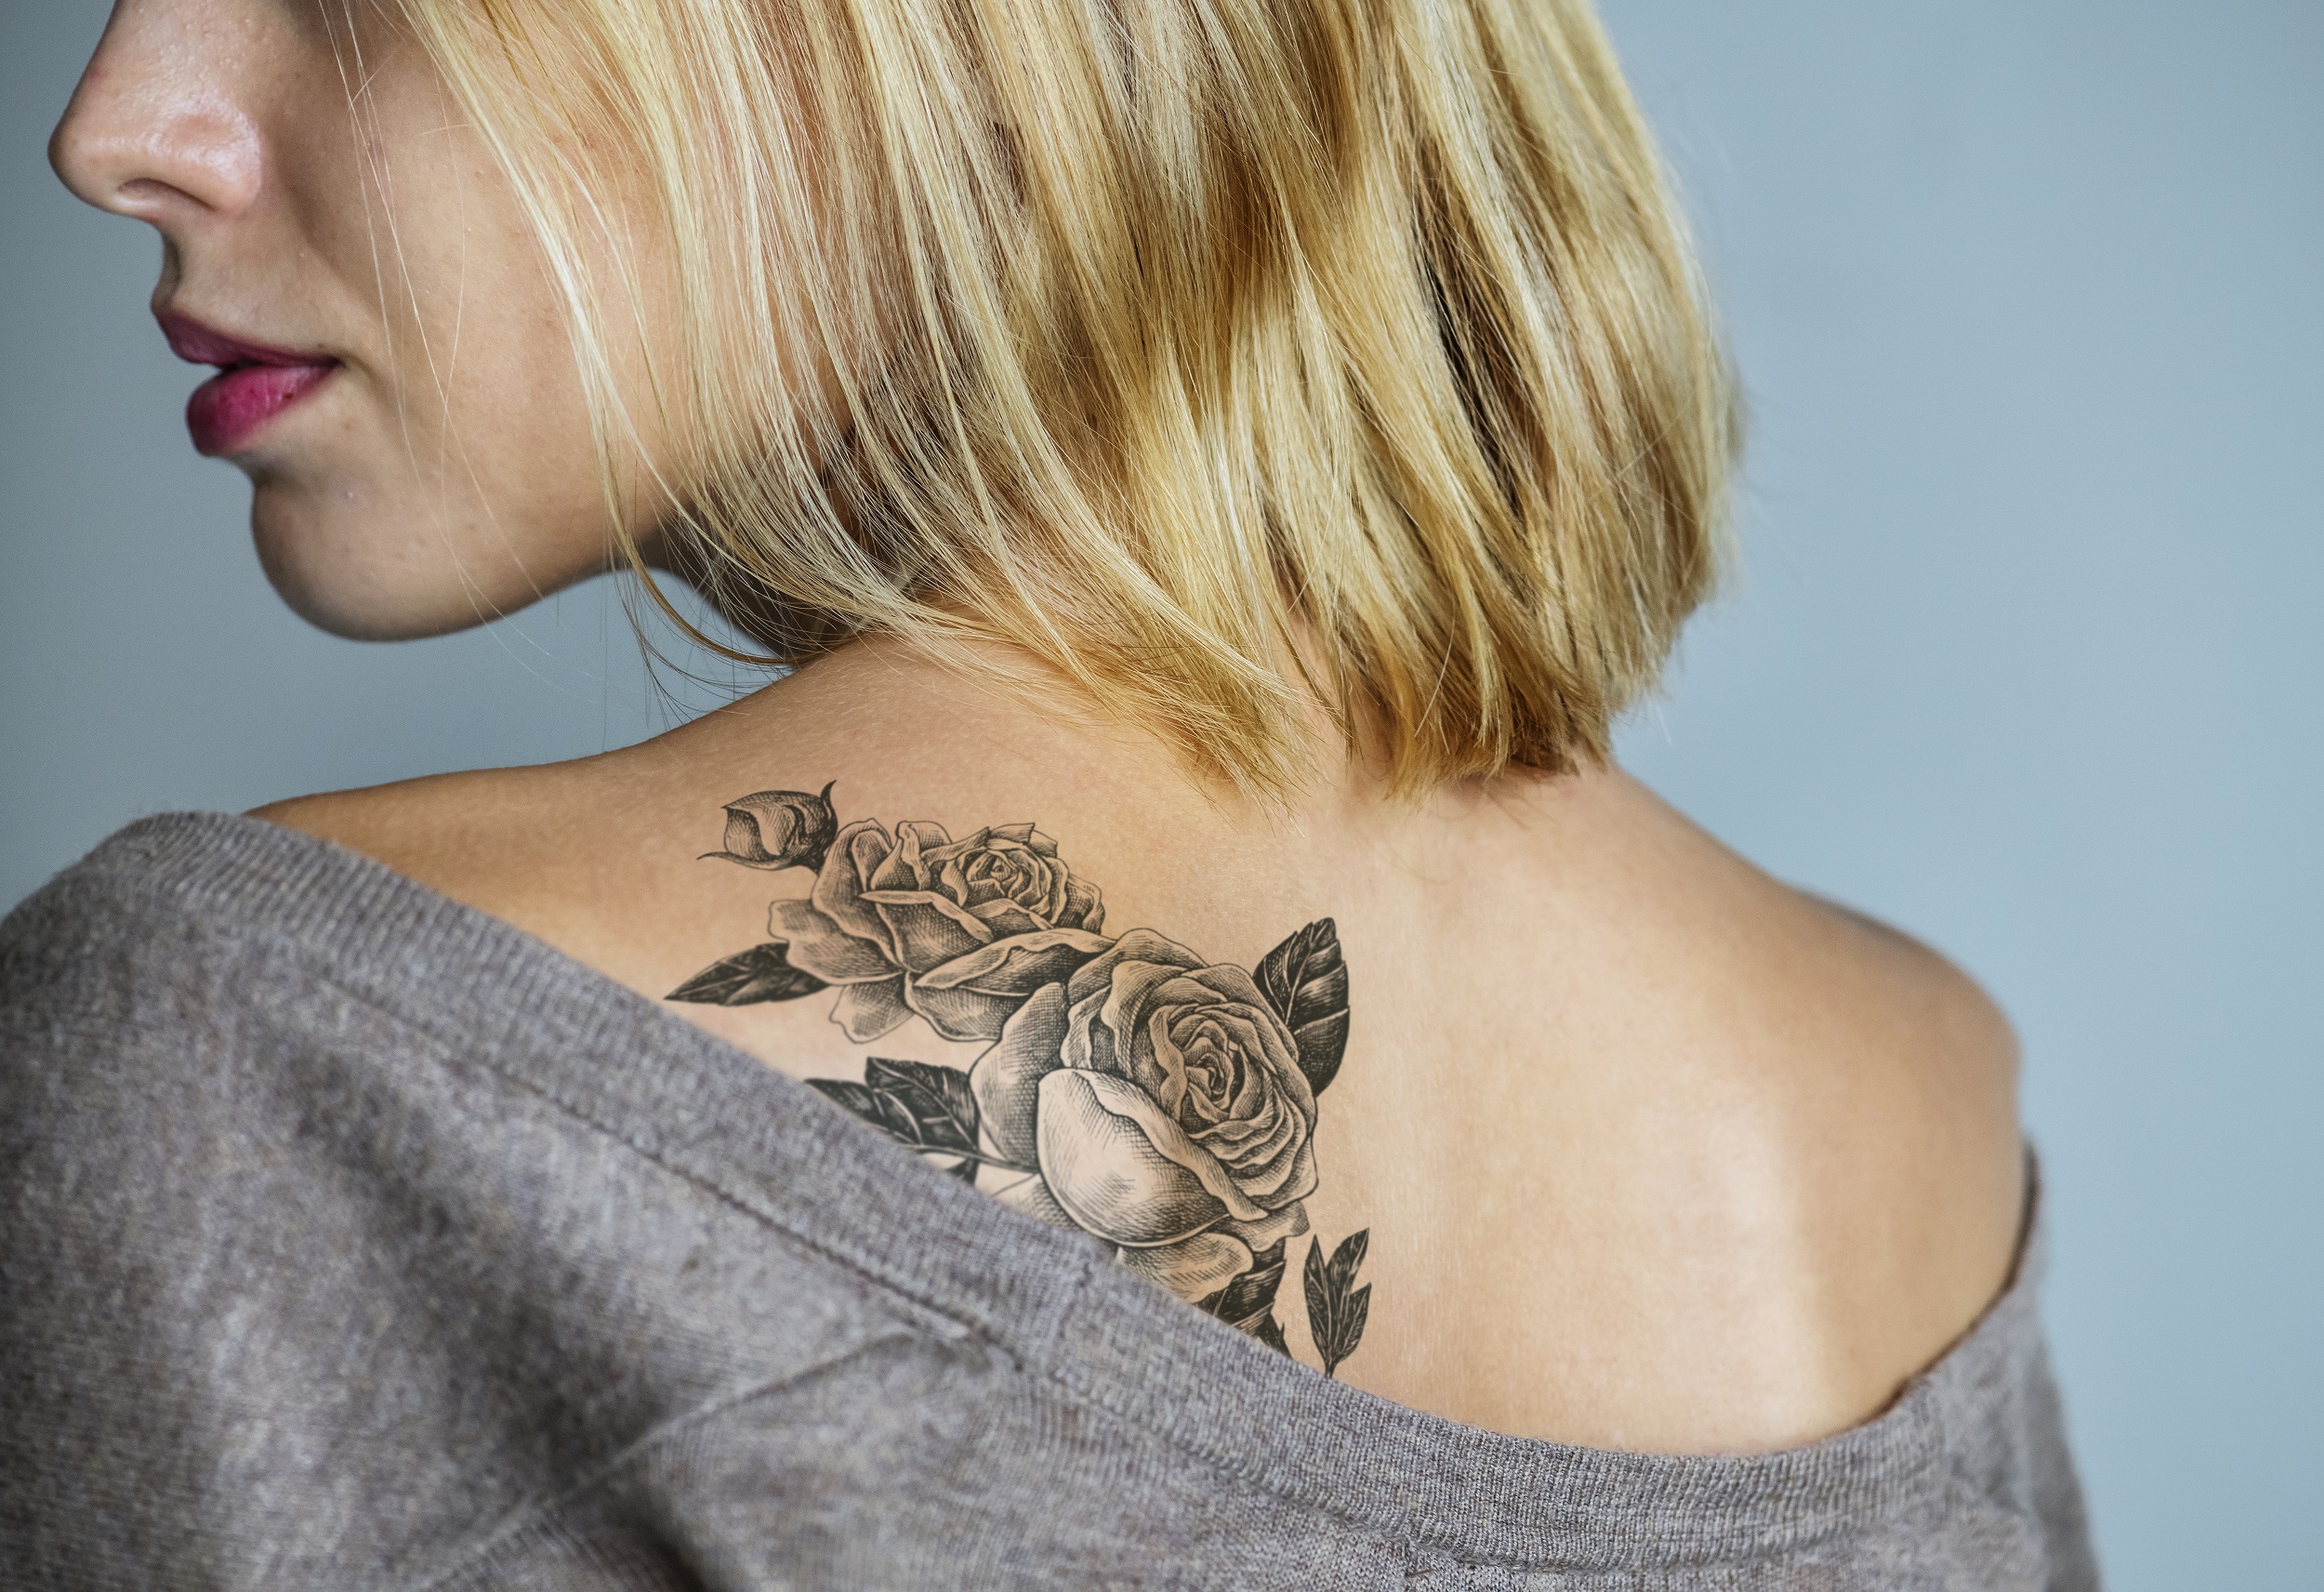 Exposição na Alemanha inova ao tratar tatuagem como arte - GGN